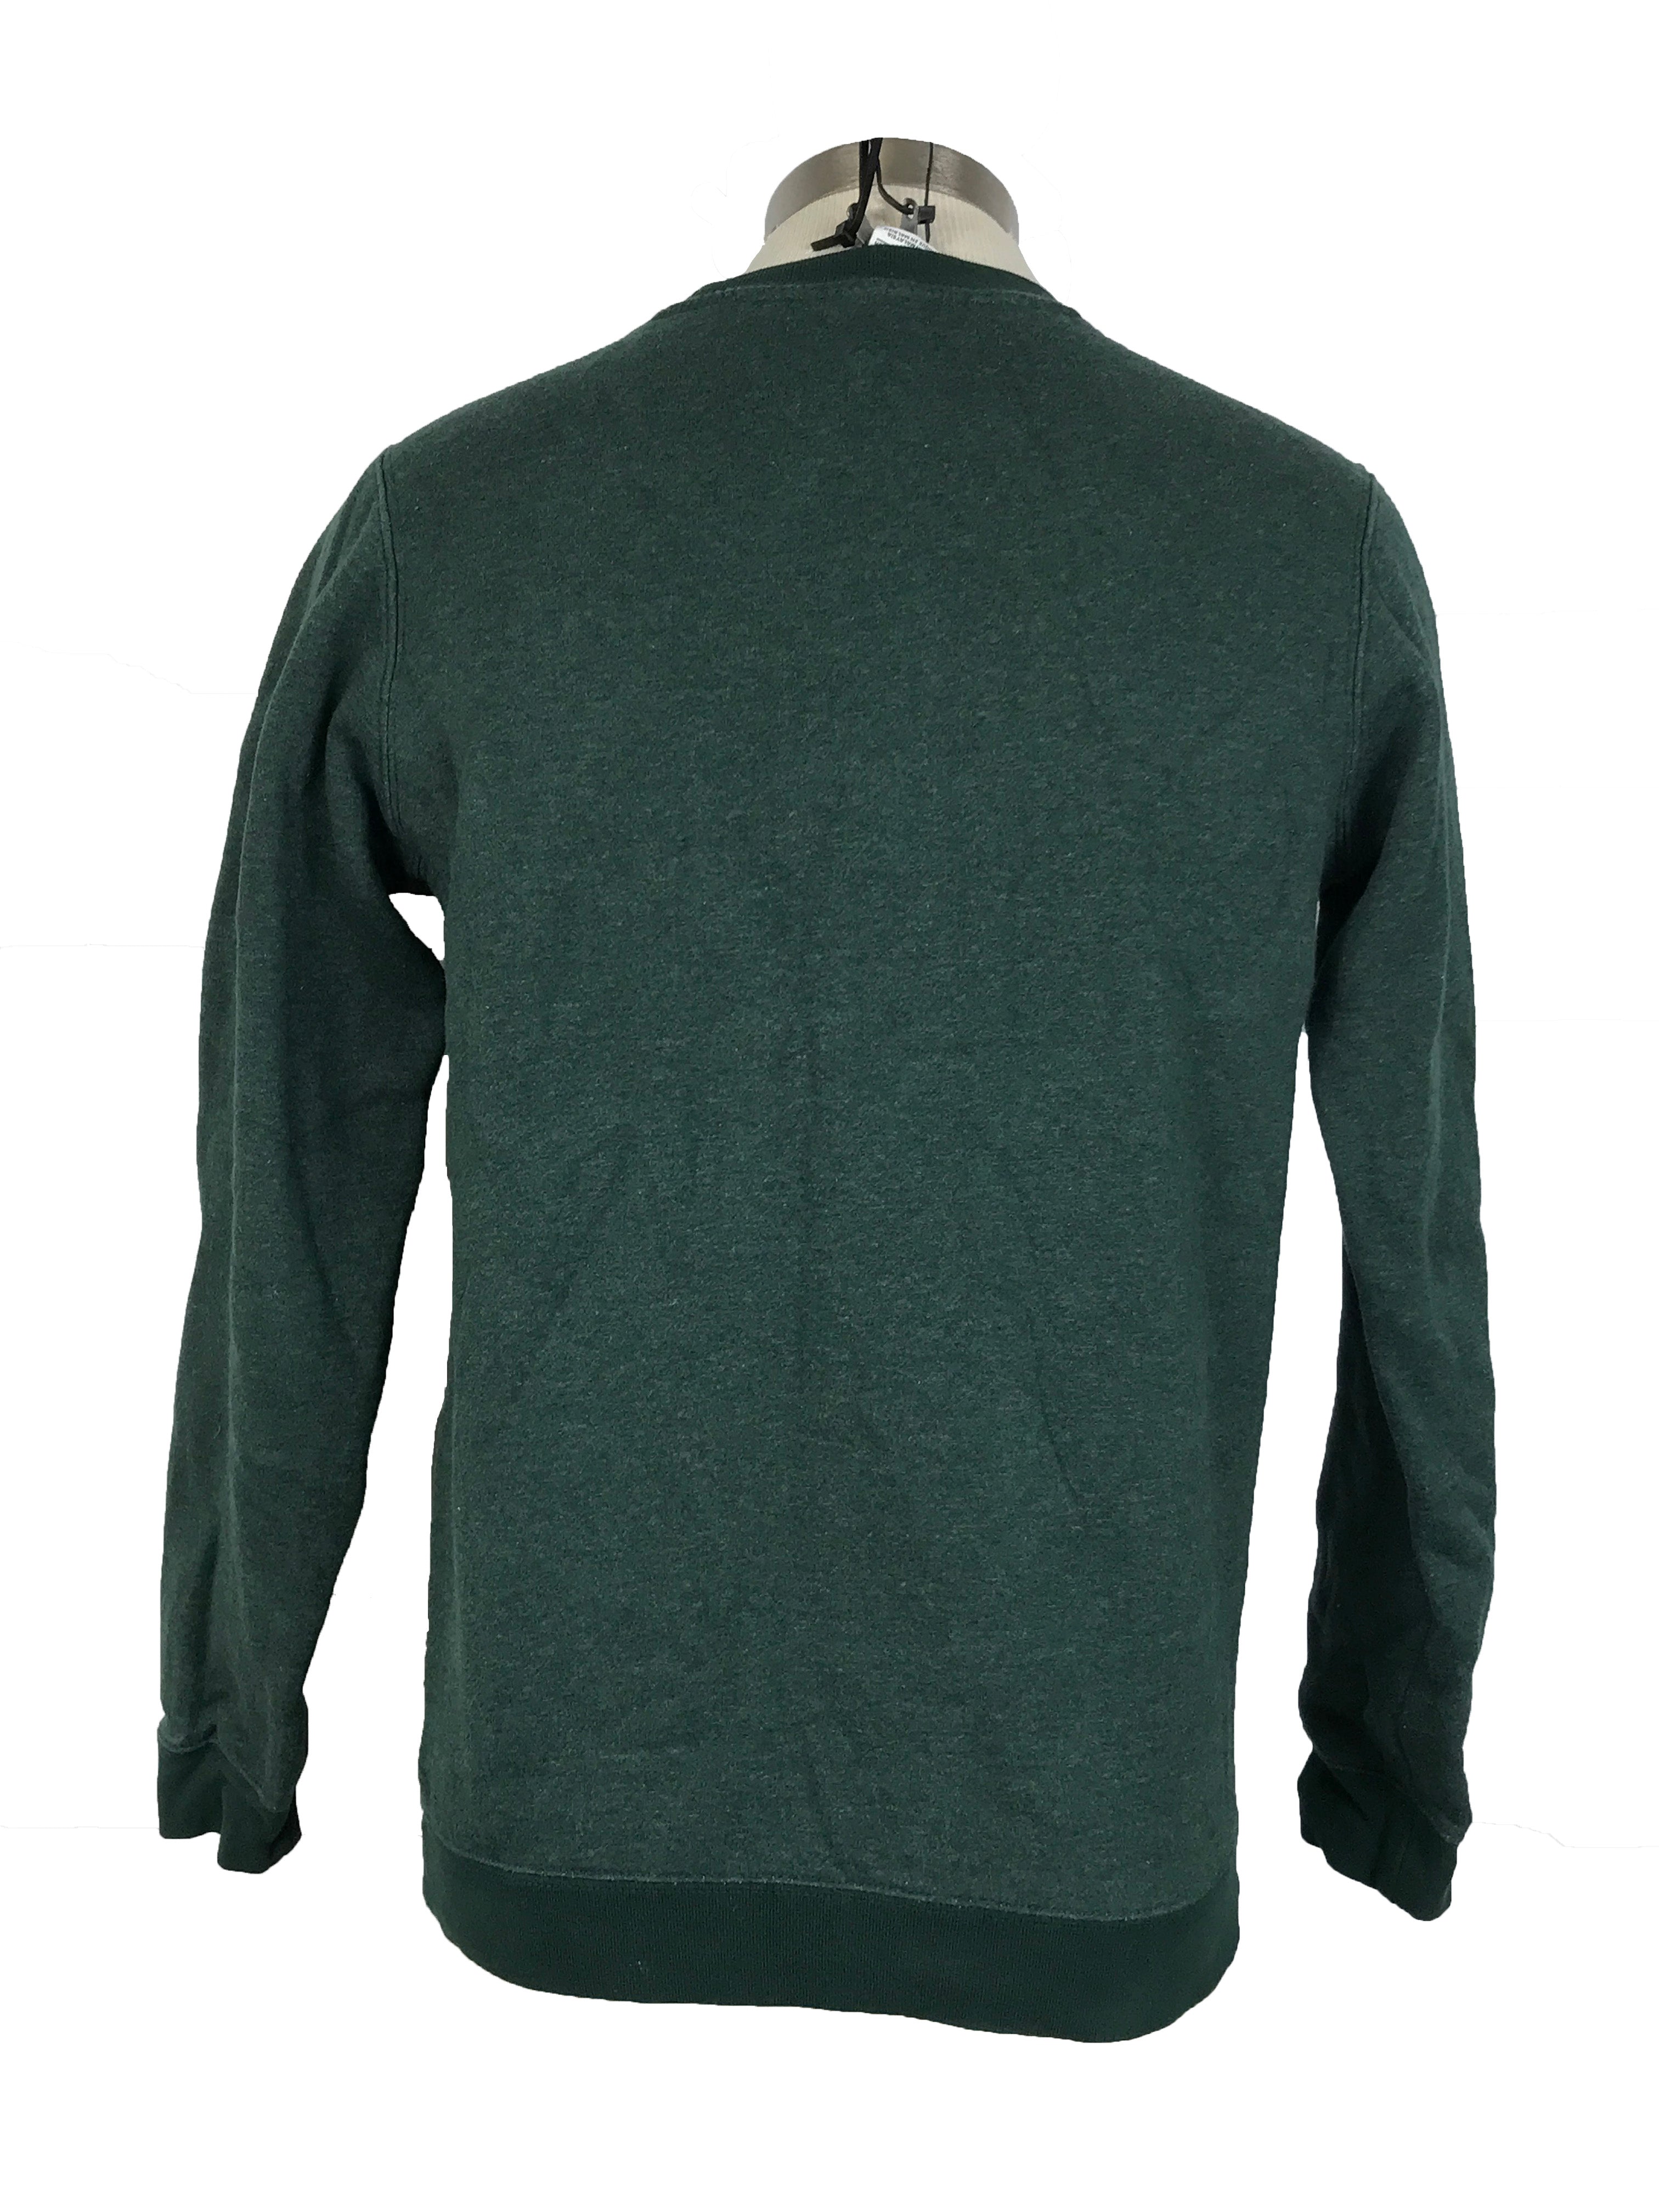 Nike Michigan State University Green Sweatshirt Unisex Size Small